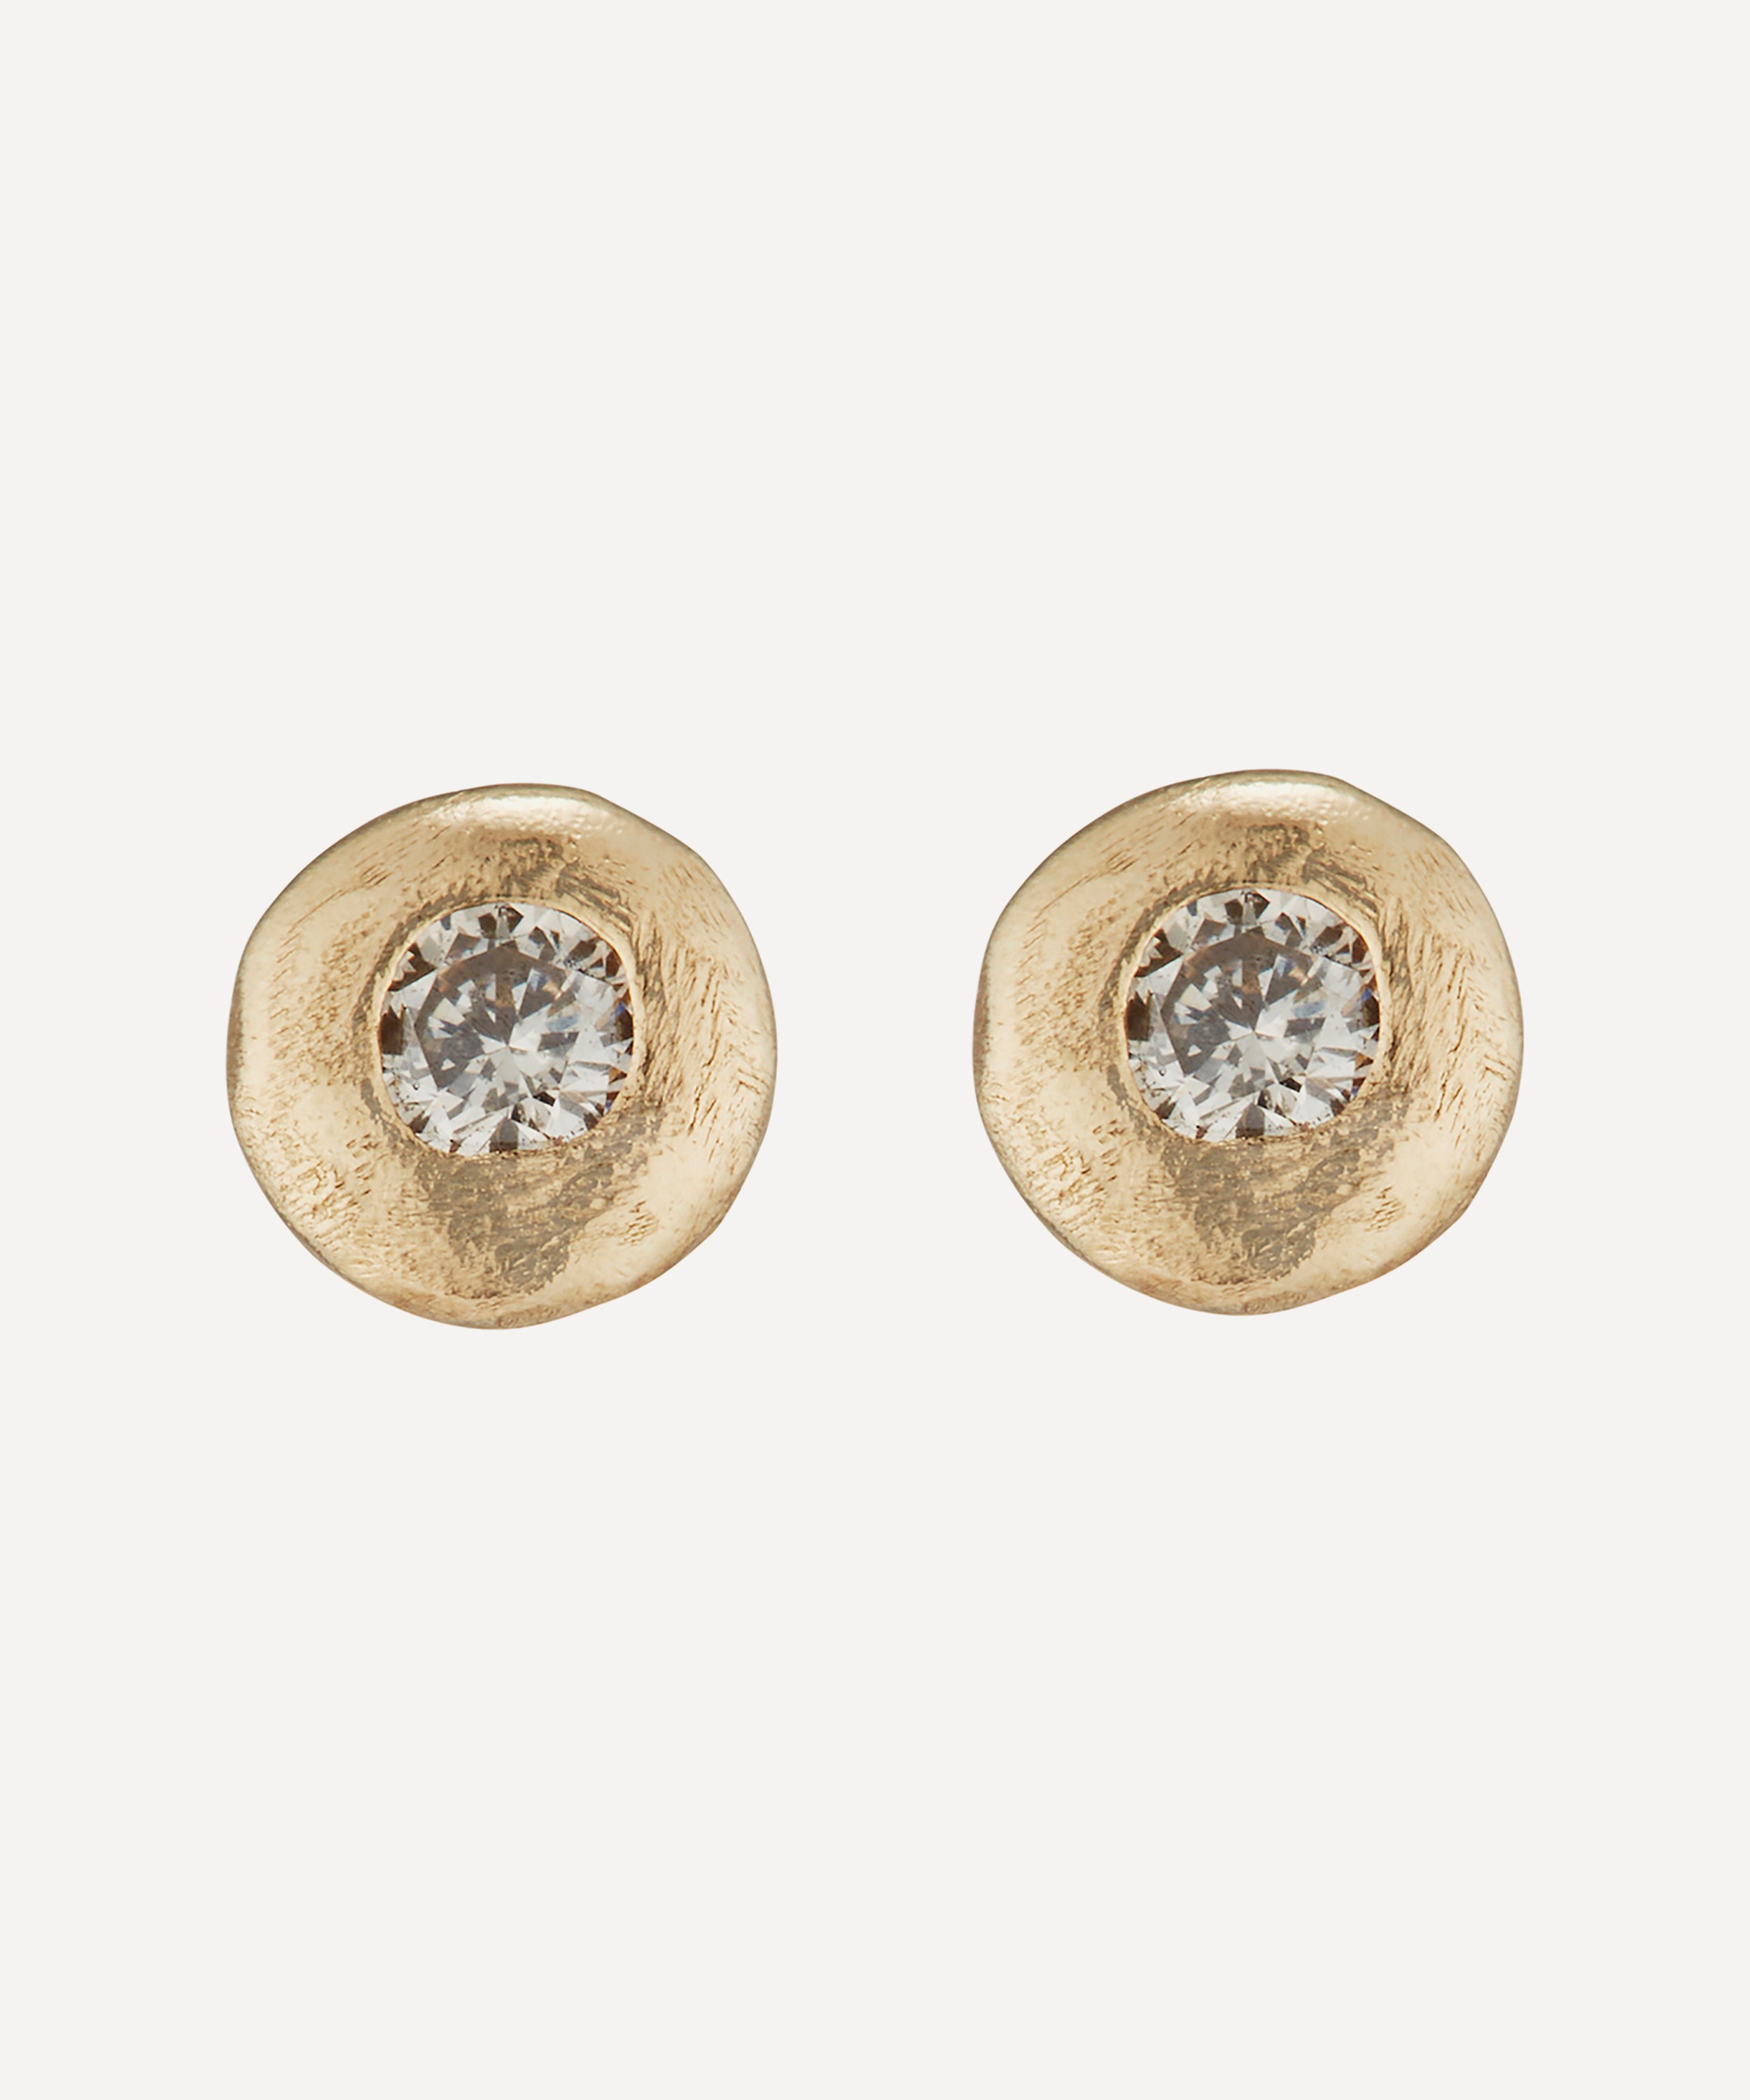 Ellis Mhairi Cameron - 14ct Gold LII White Diamond Mini Stud Earrings image number 0